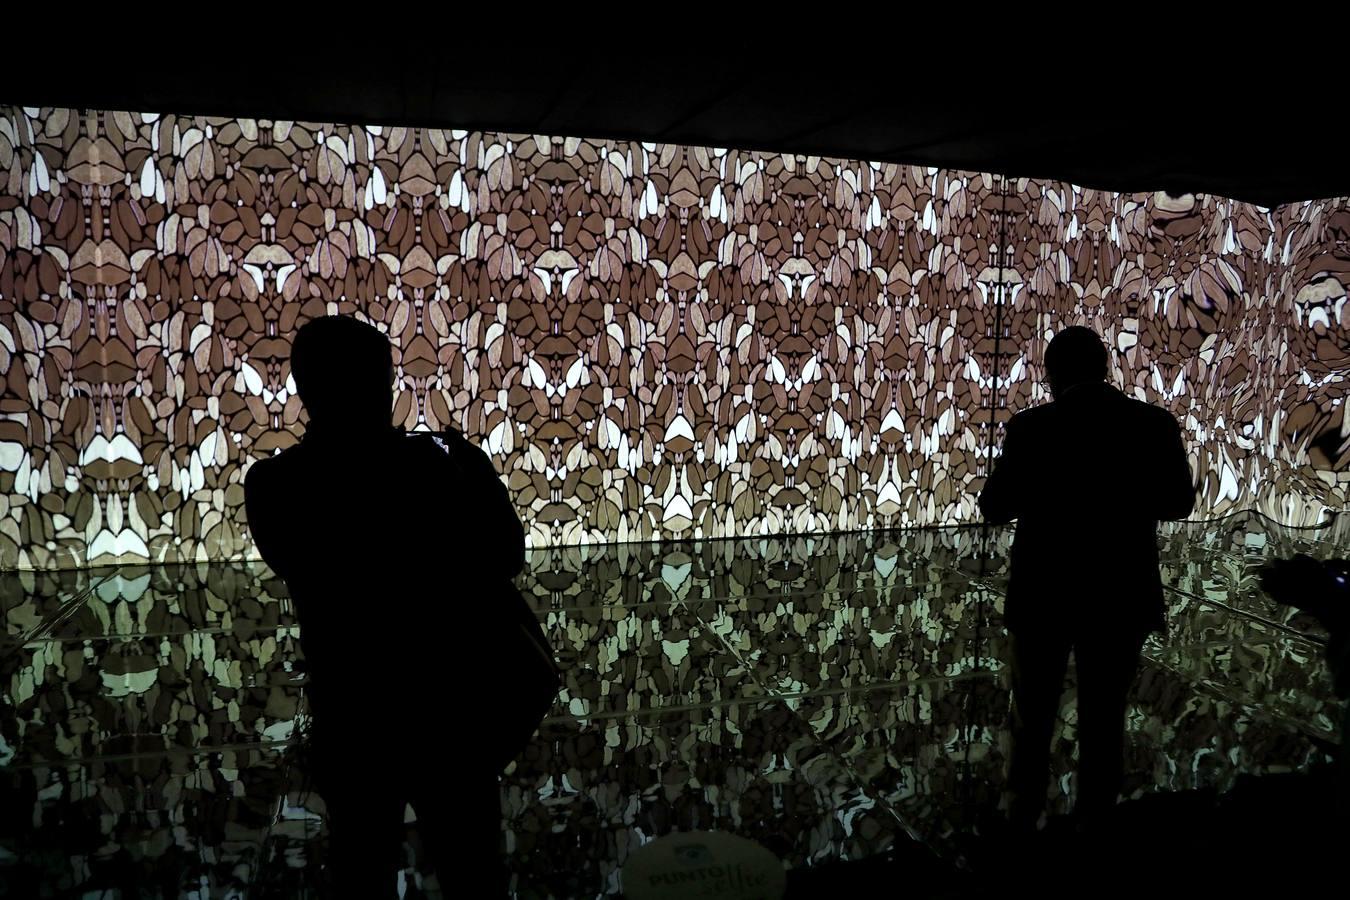 La exposición «El oro de Klimt» llega al Pabellón de la Navegación de Sevilla